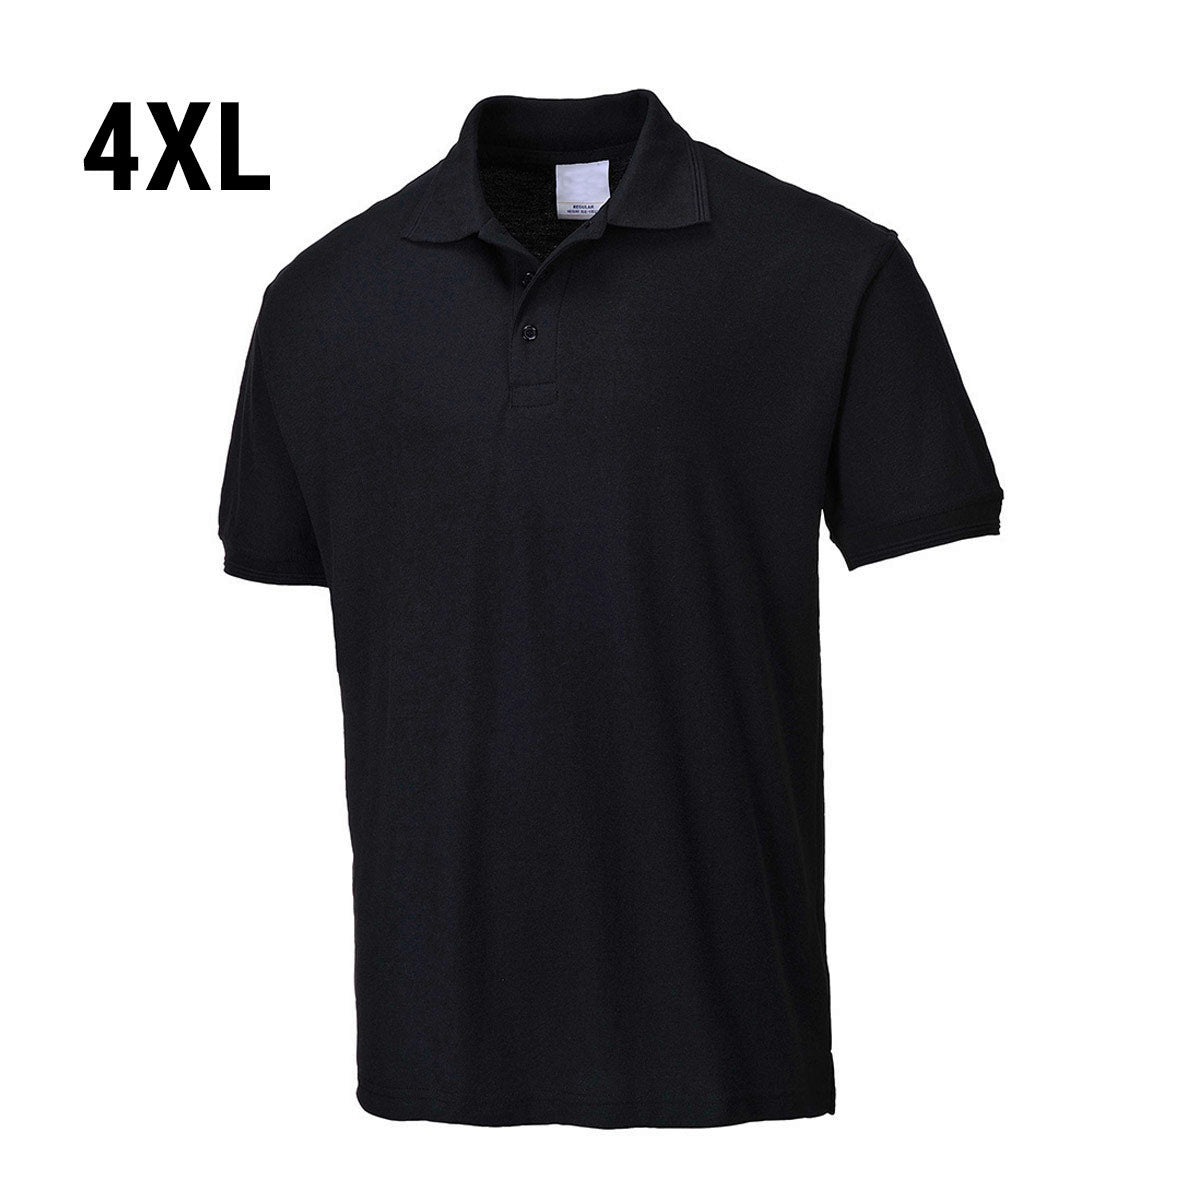 (5 stk) Poloskjorte til menn - Svart - Størrelse: 4XL